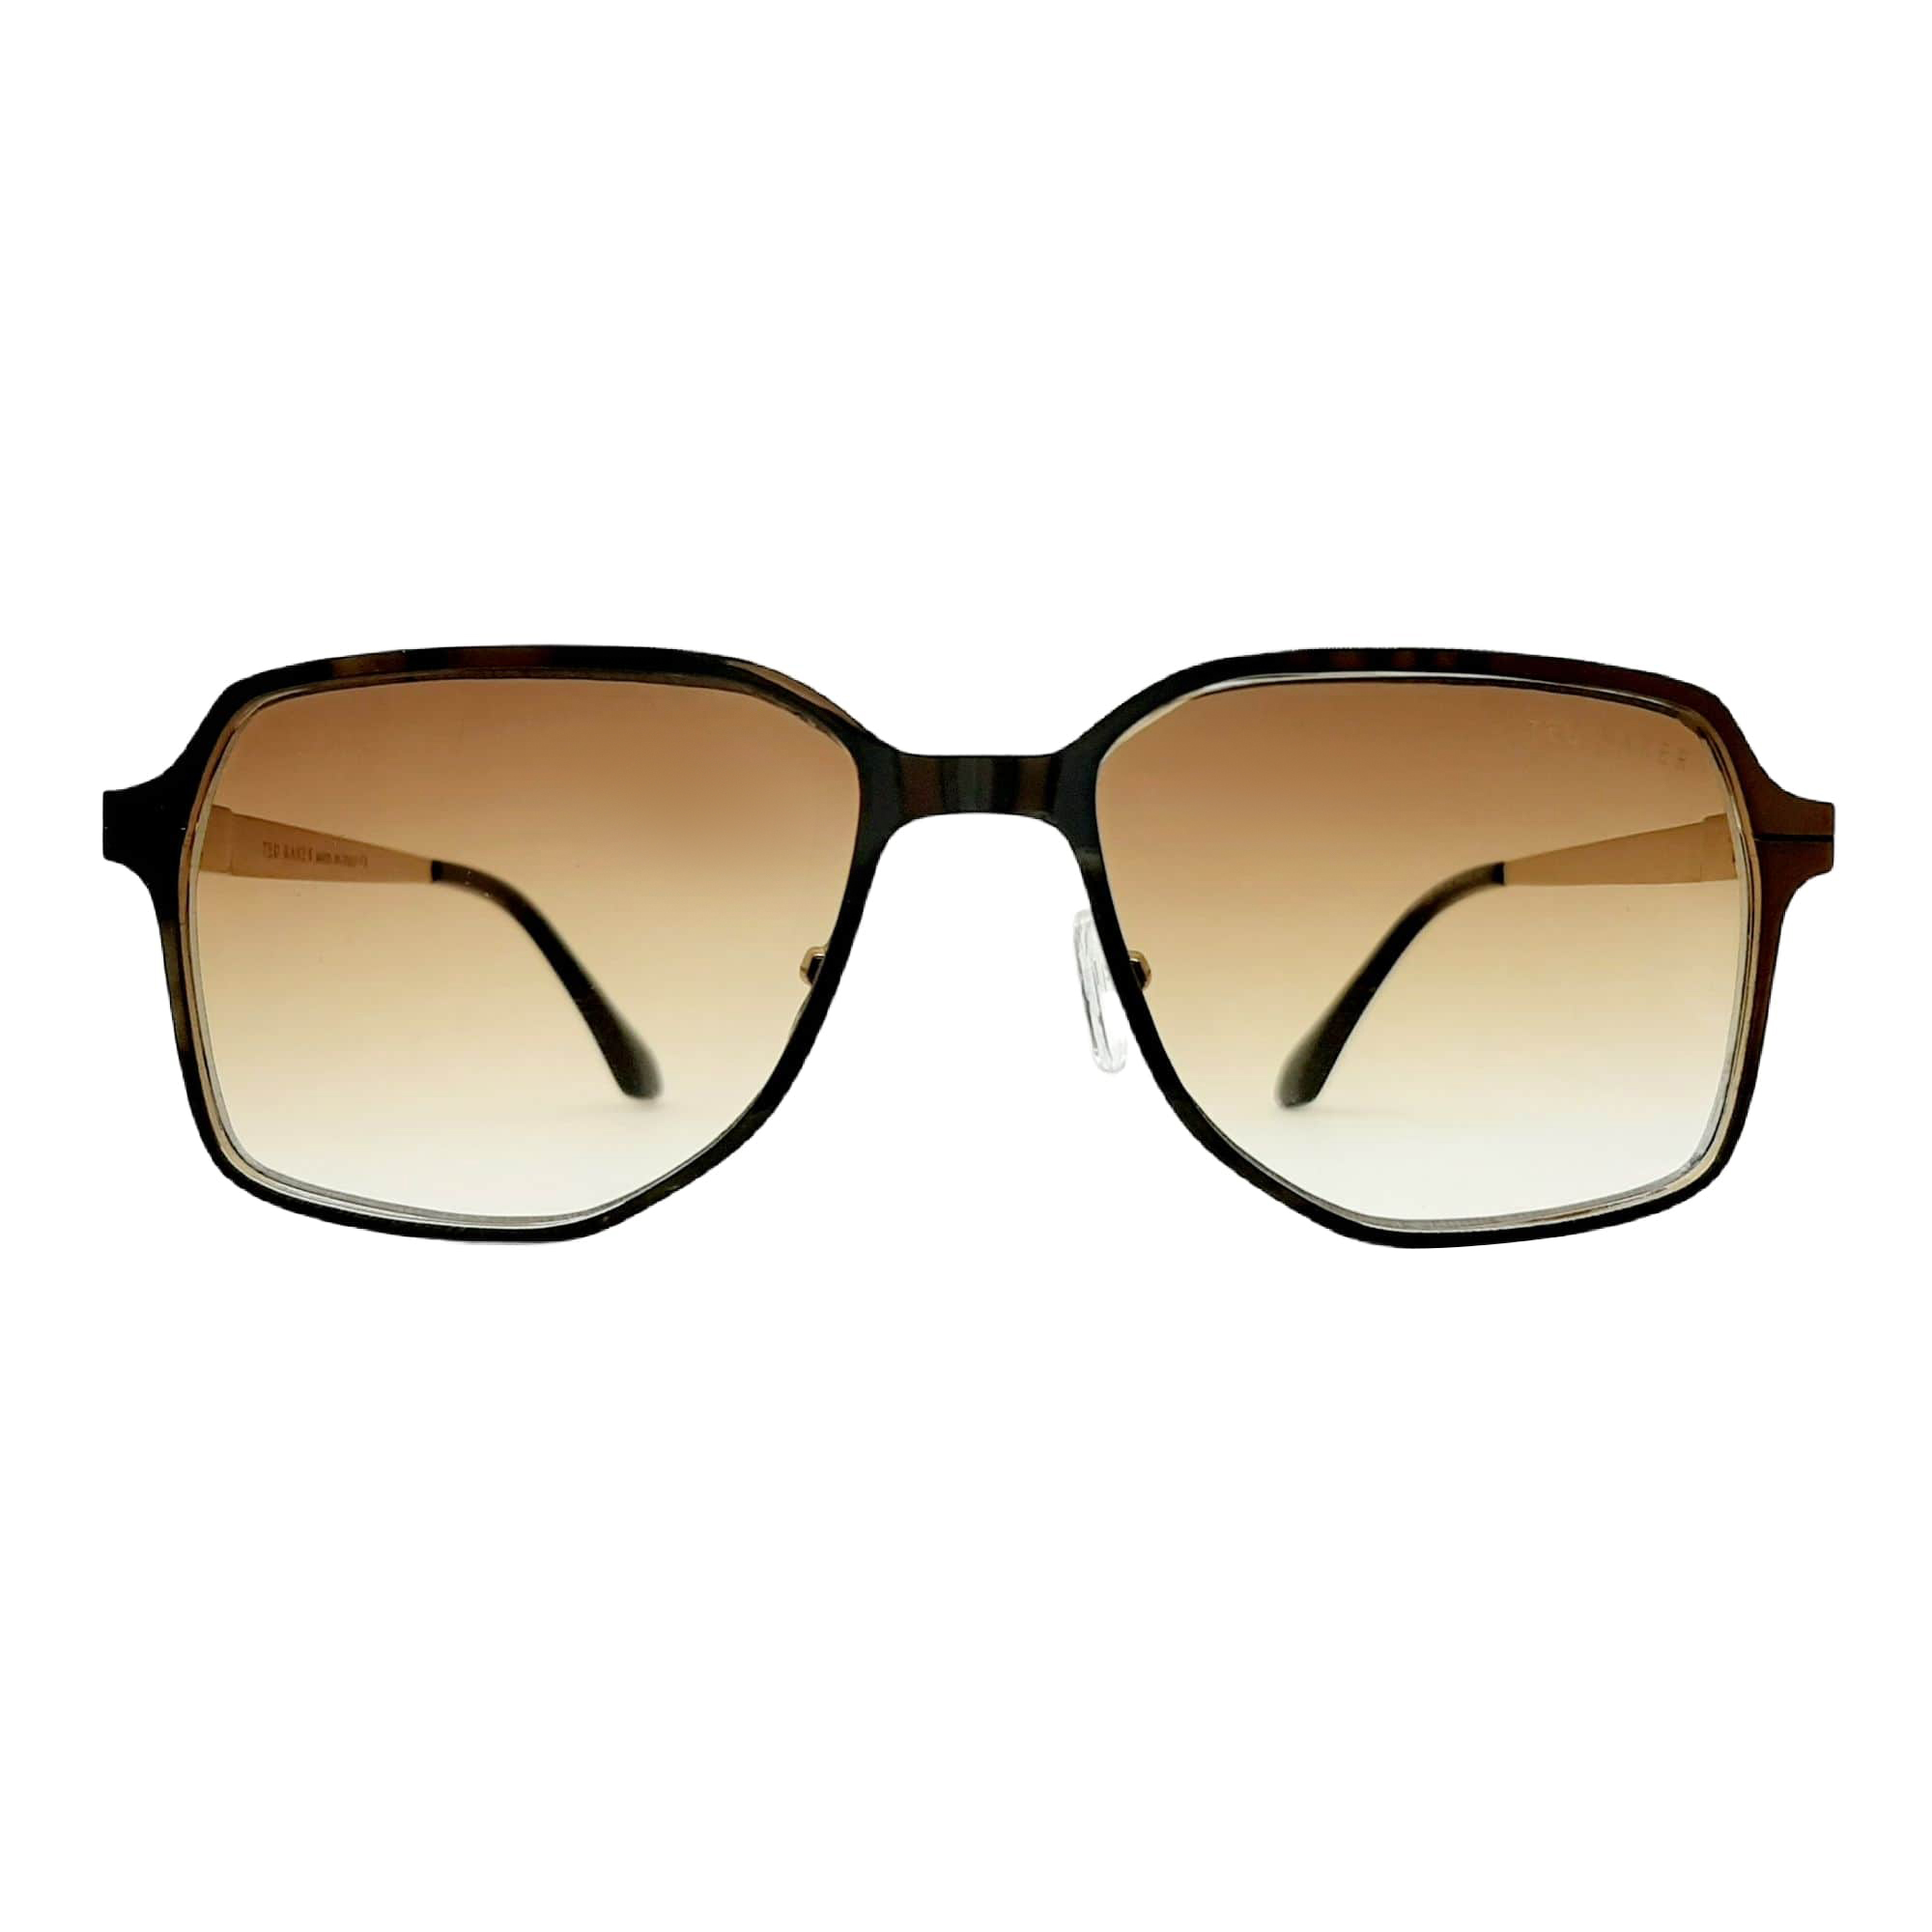 عینک آفتابی تد بیکر مدل W56129c3